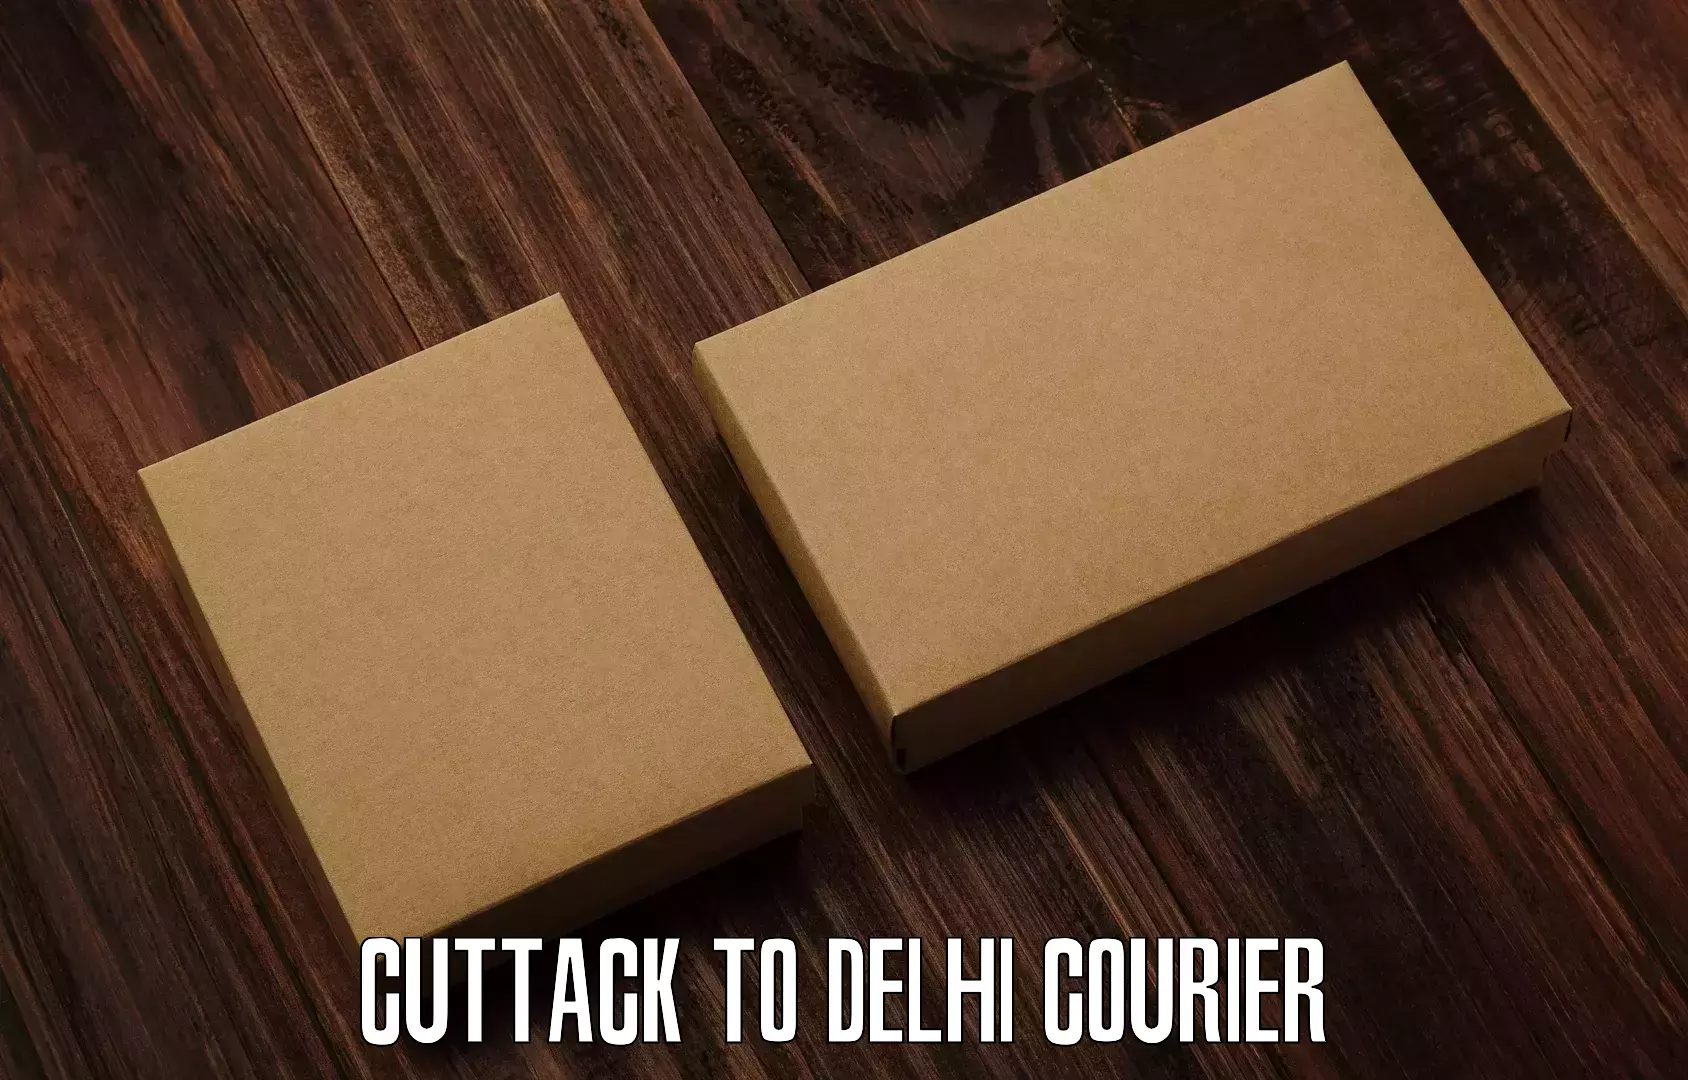 Easy access courier services Cuttack to Jamia Millia Islamia New Delhi